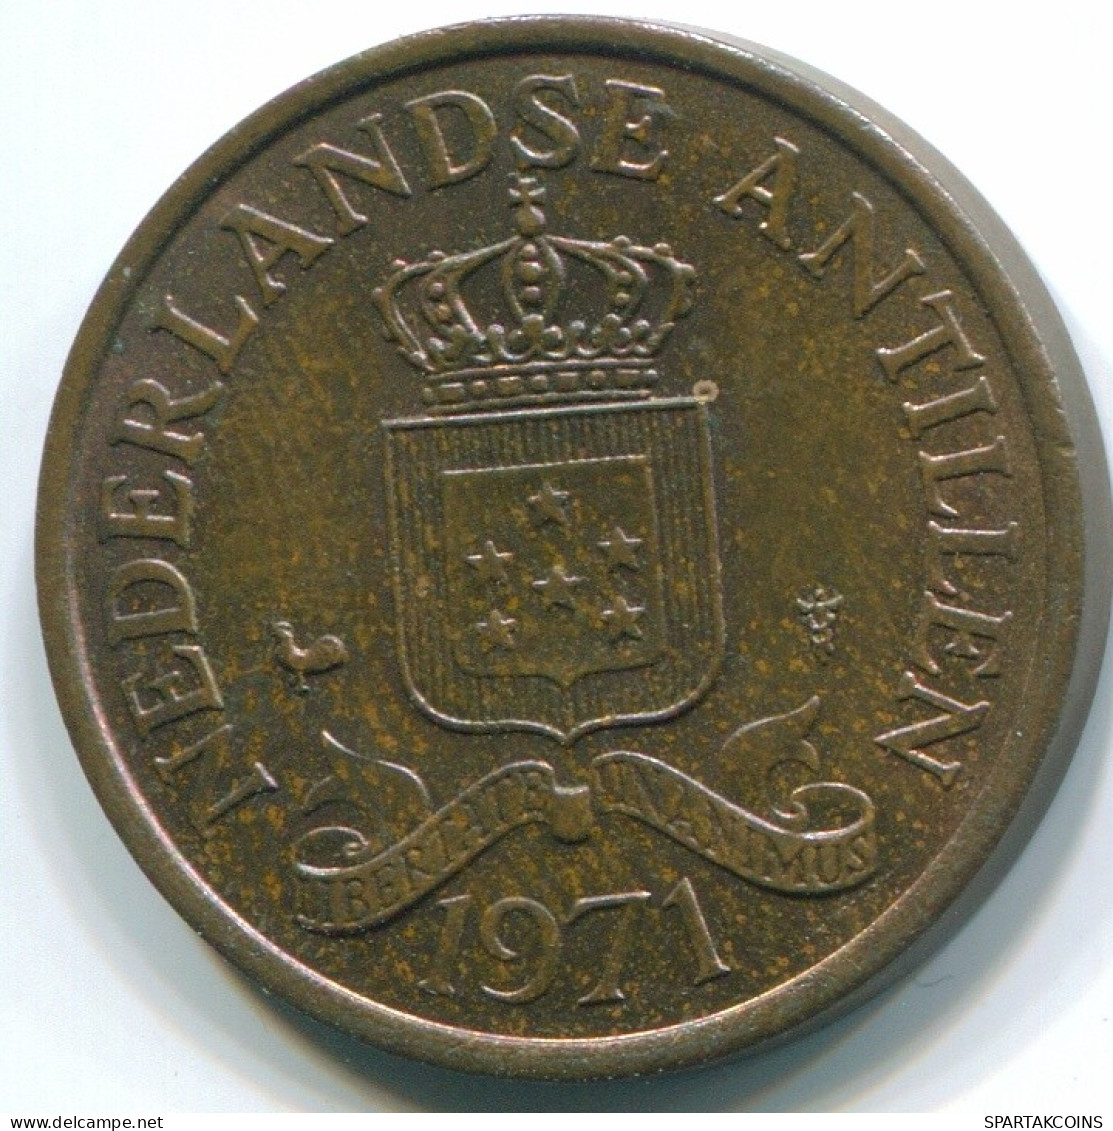 2 1/2 CENT 1971 NIEDERLÄNDISCHE ANTILLEN Bronze Koloniale Münze #S10496.D.A - Niederländische Antillen